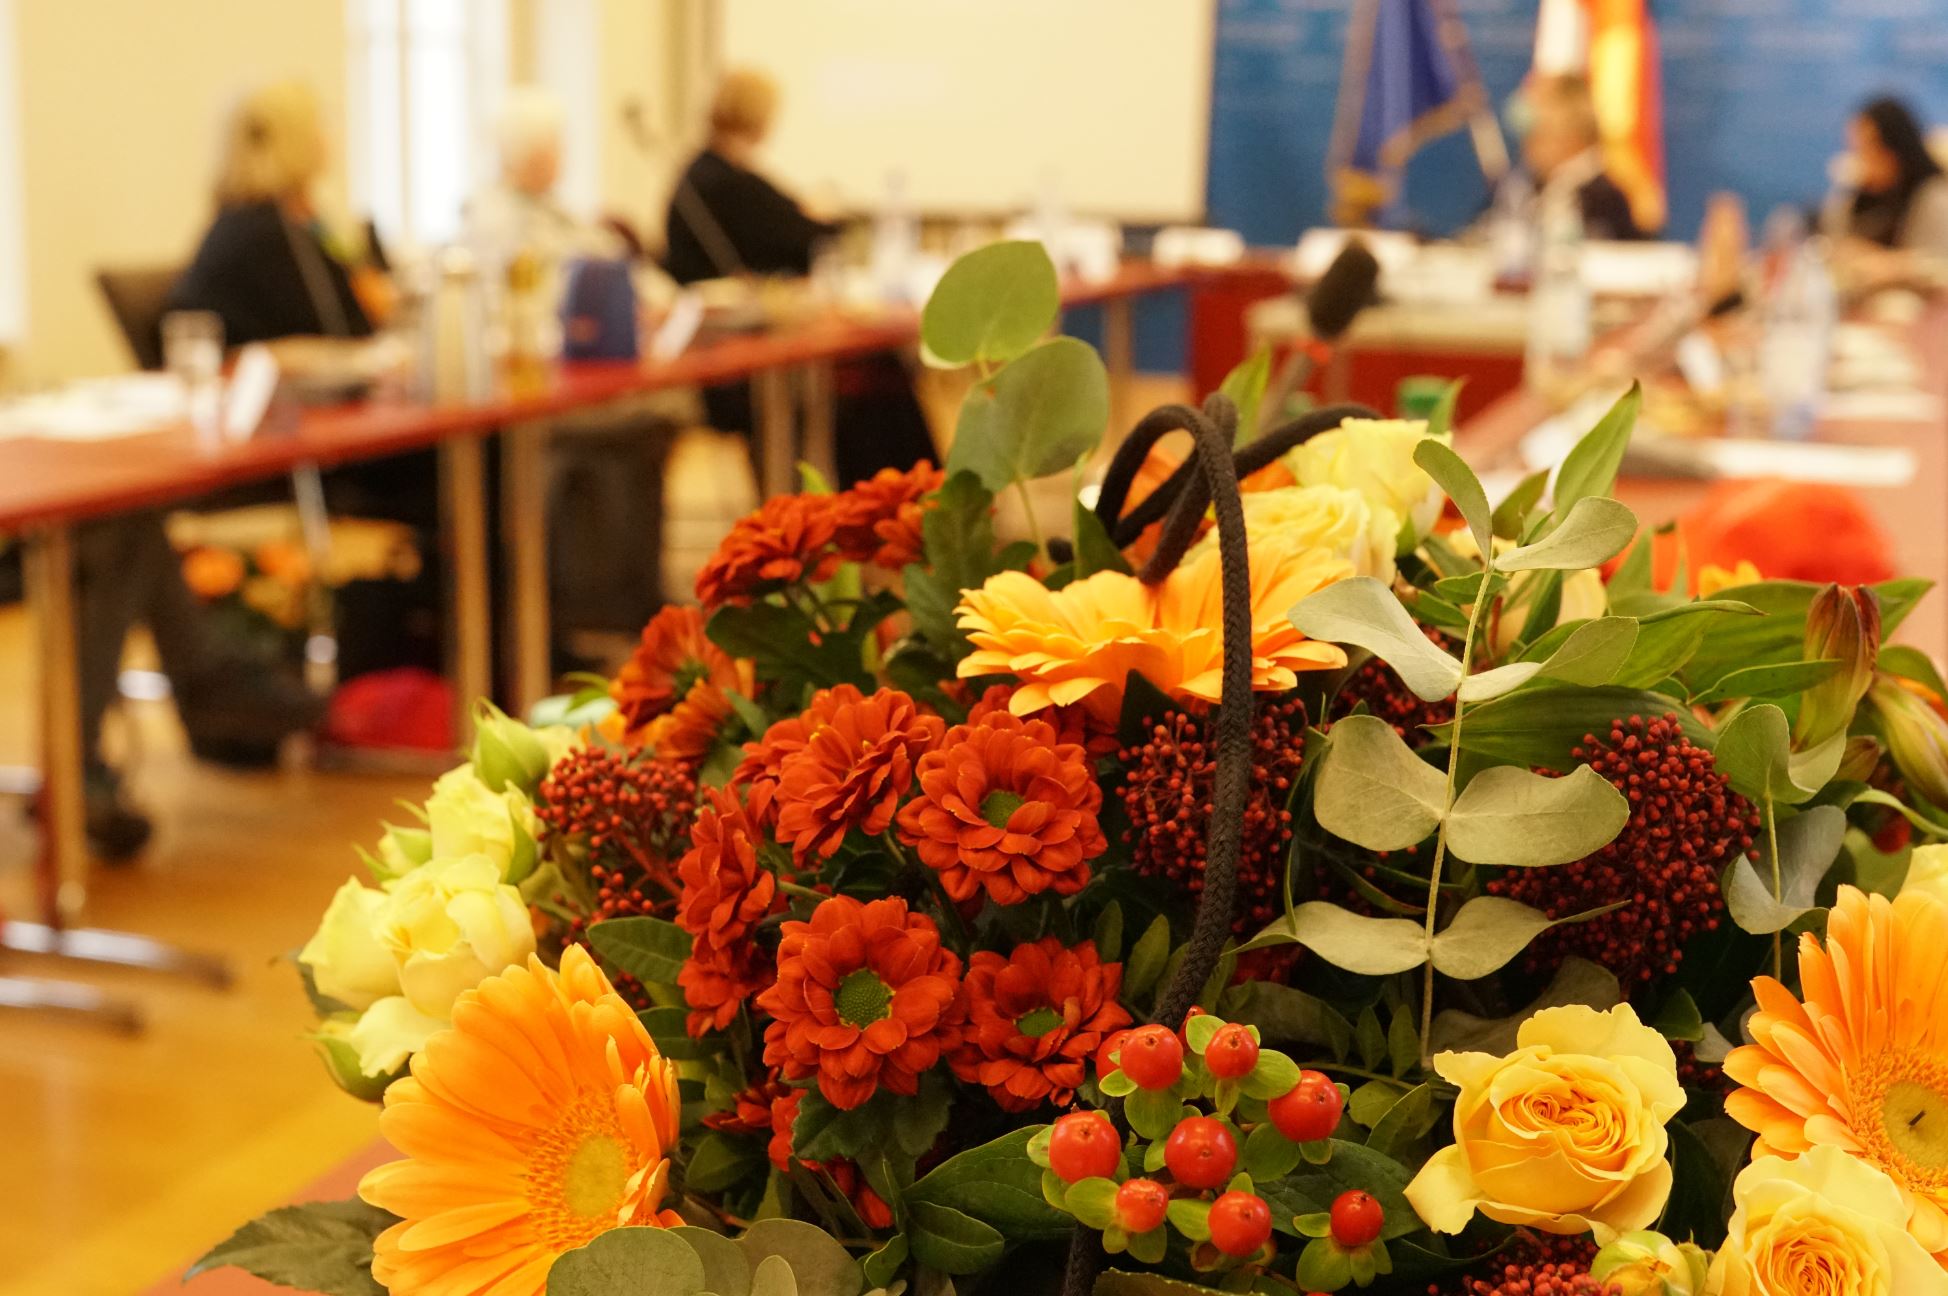 Verleihung Landespräventionspreis 2022 - Foto von Blumen zur Preisverleihung